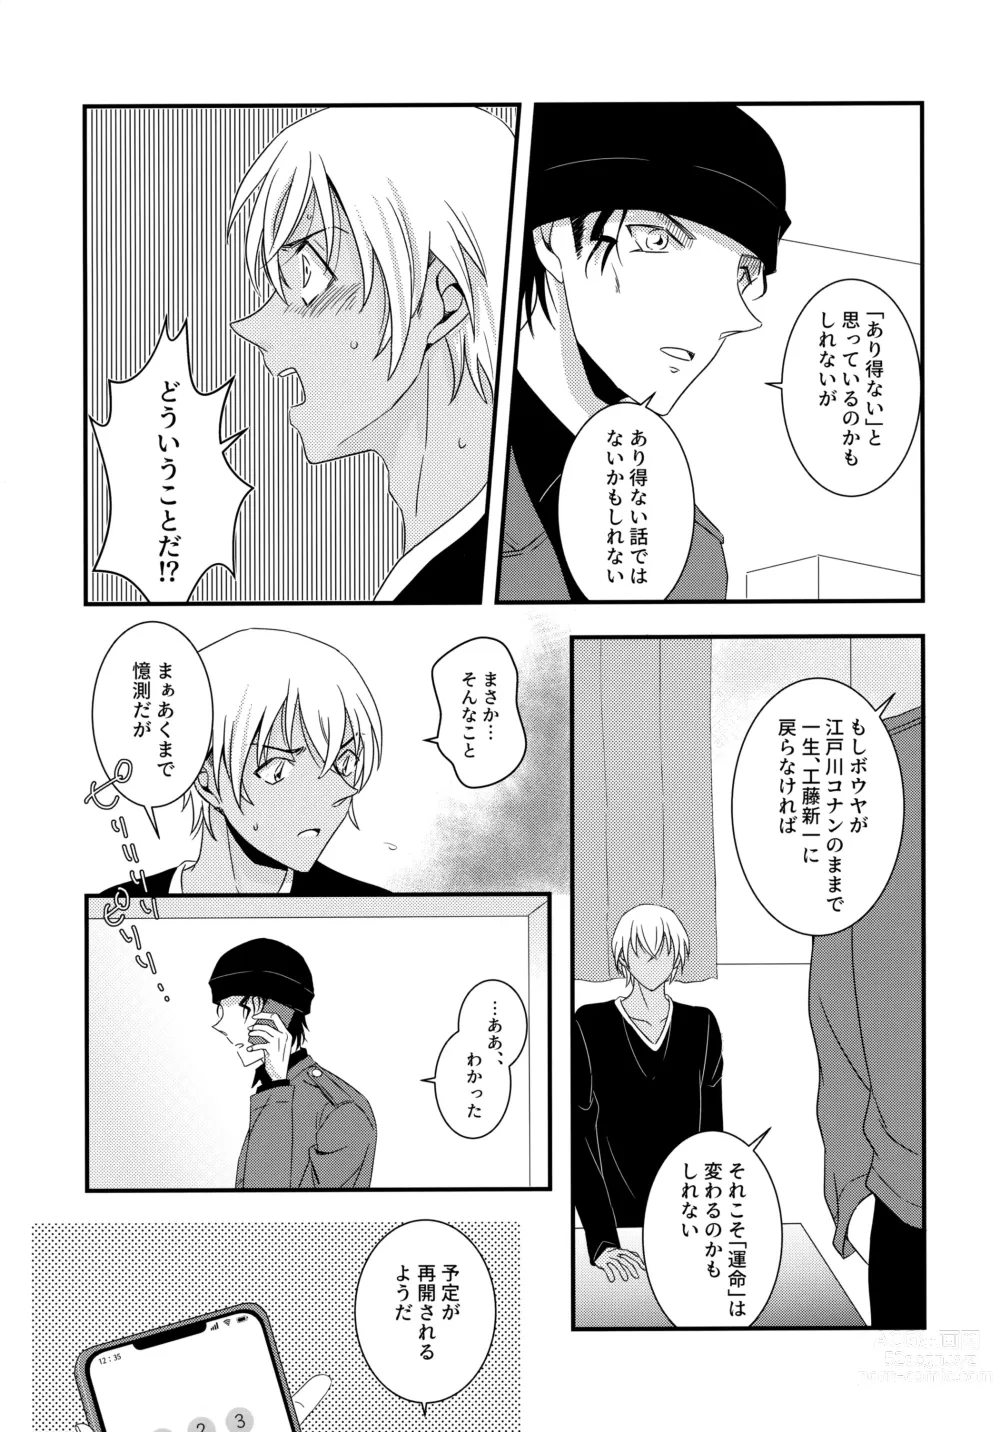 Page 16 of doujinshi Kimi to Himitsu no 7 Kakan